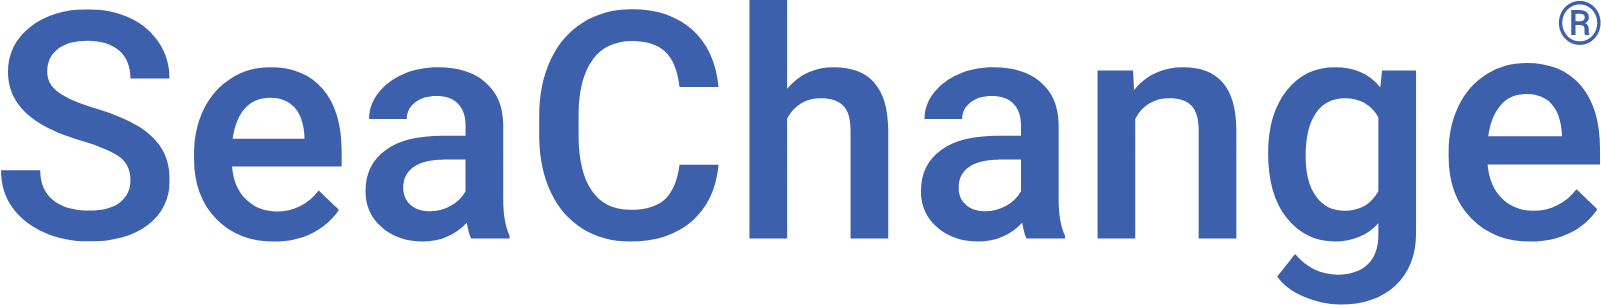 SeaChange logo large (transparent PNG)